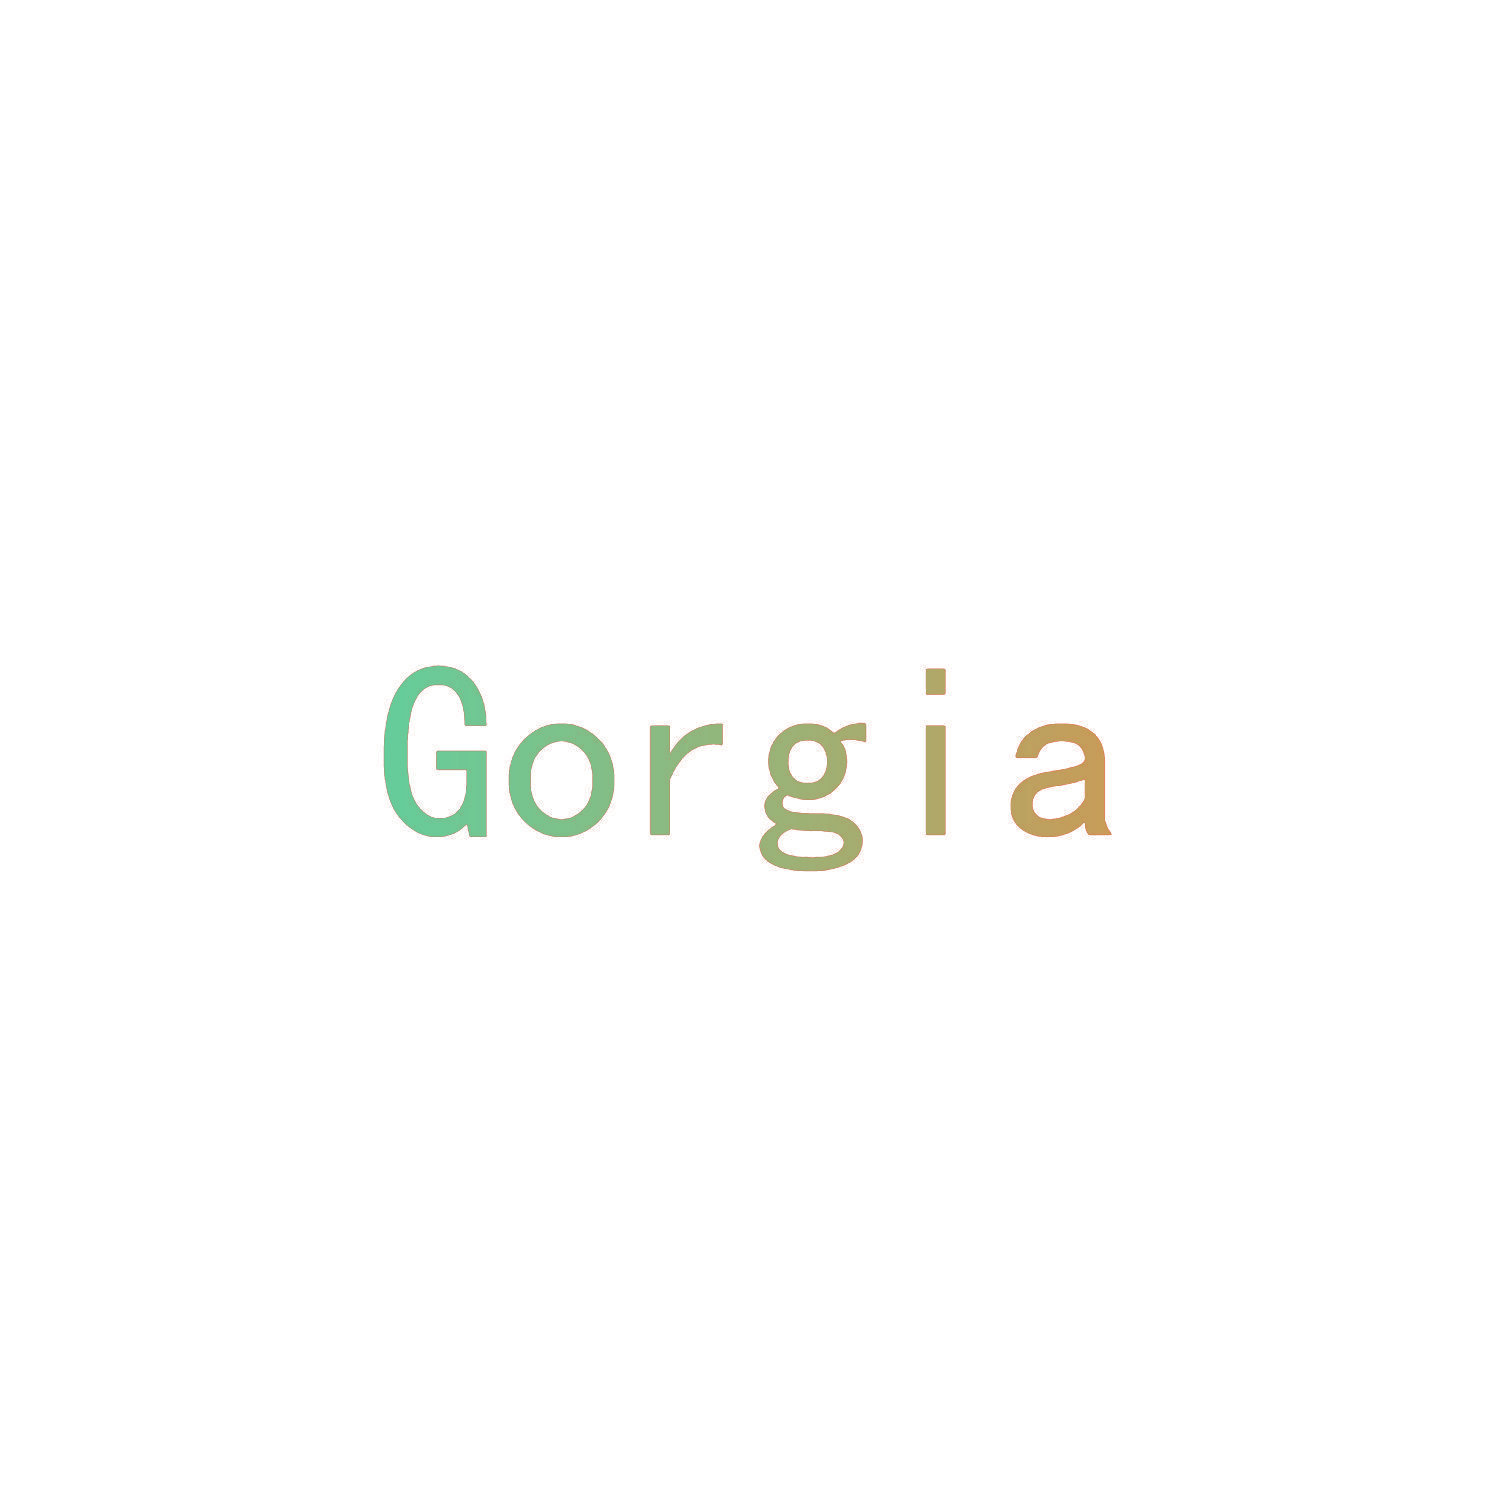 GORGIA